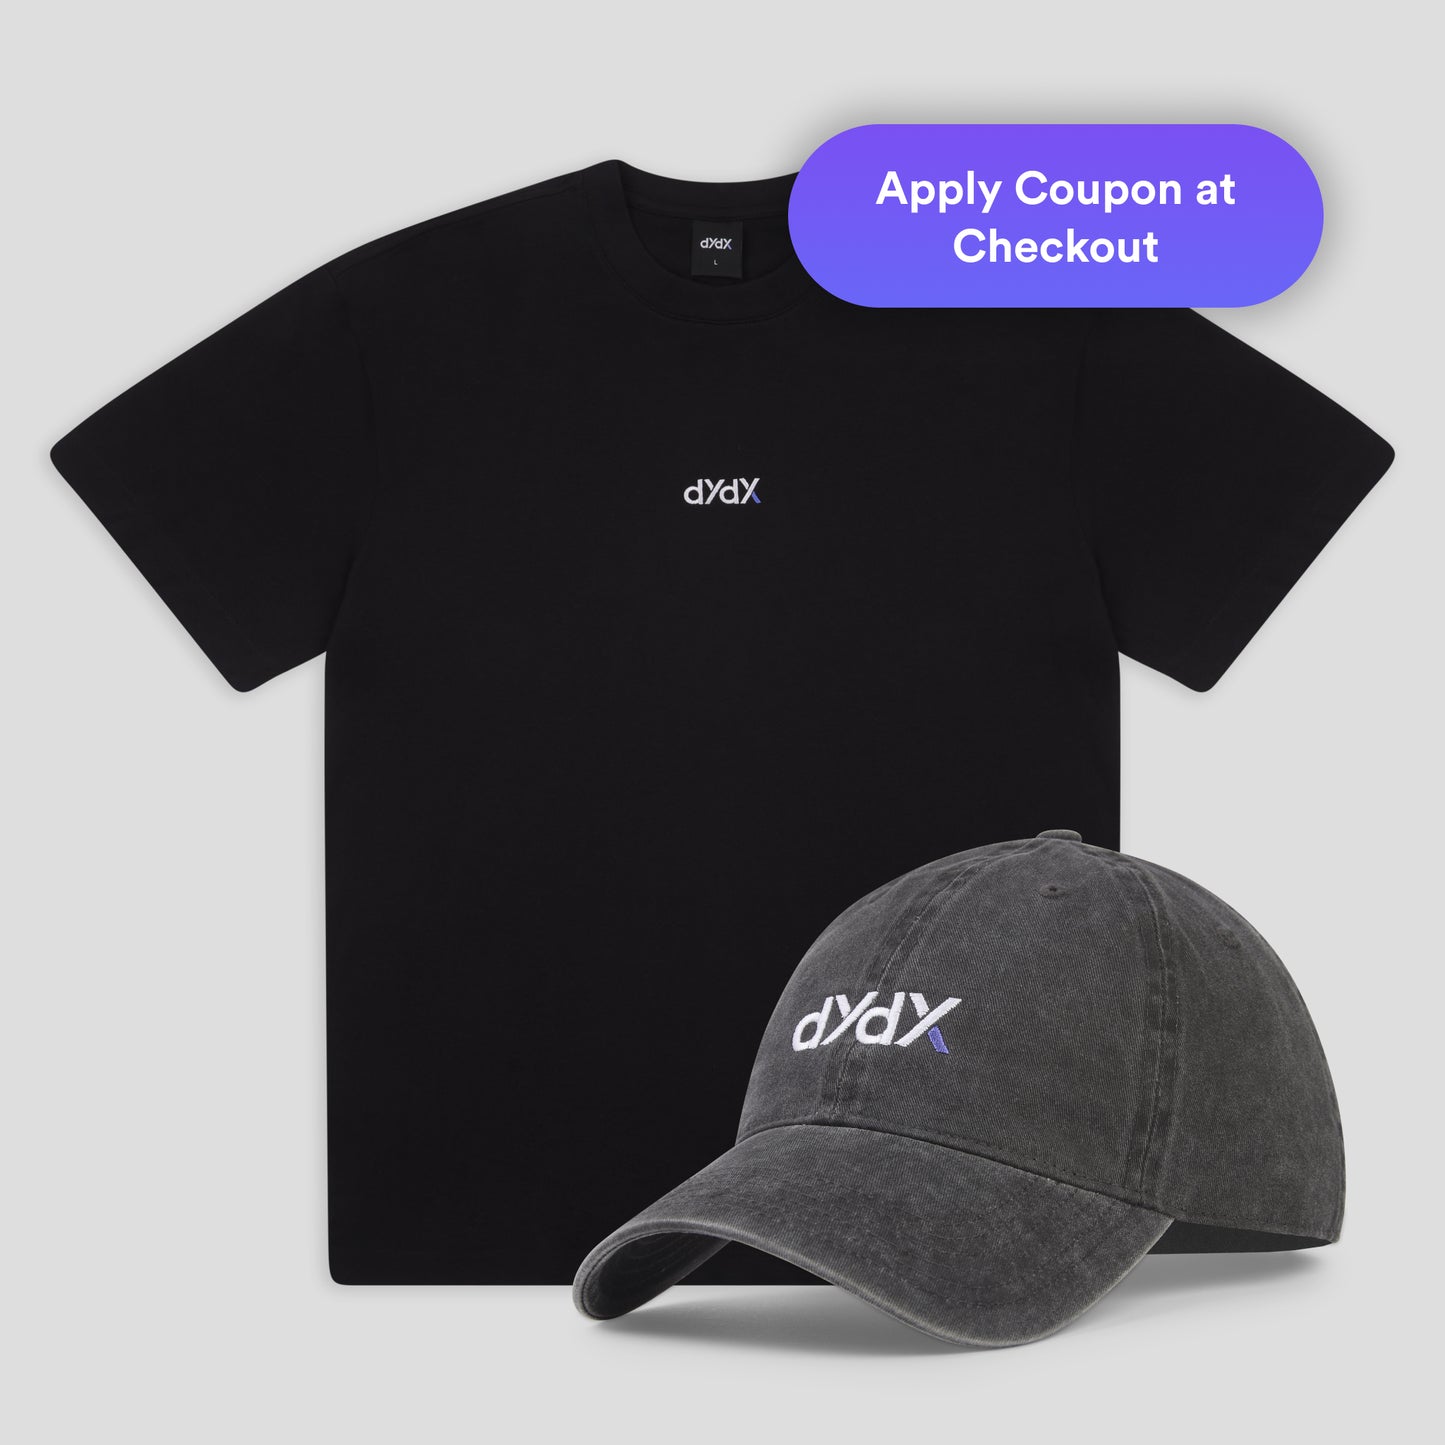 dYdX Cap and T-Shirt Bundle